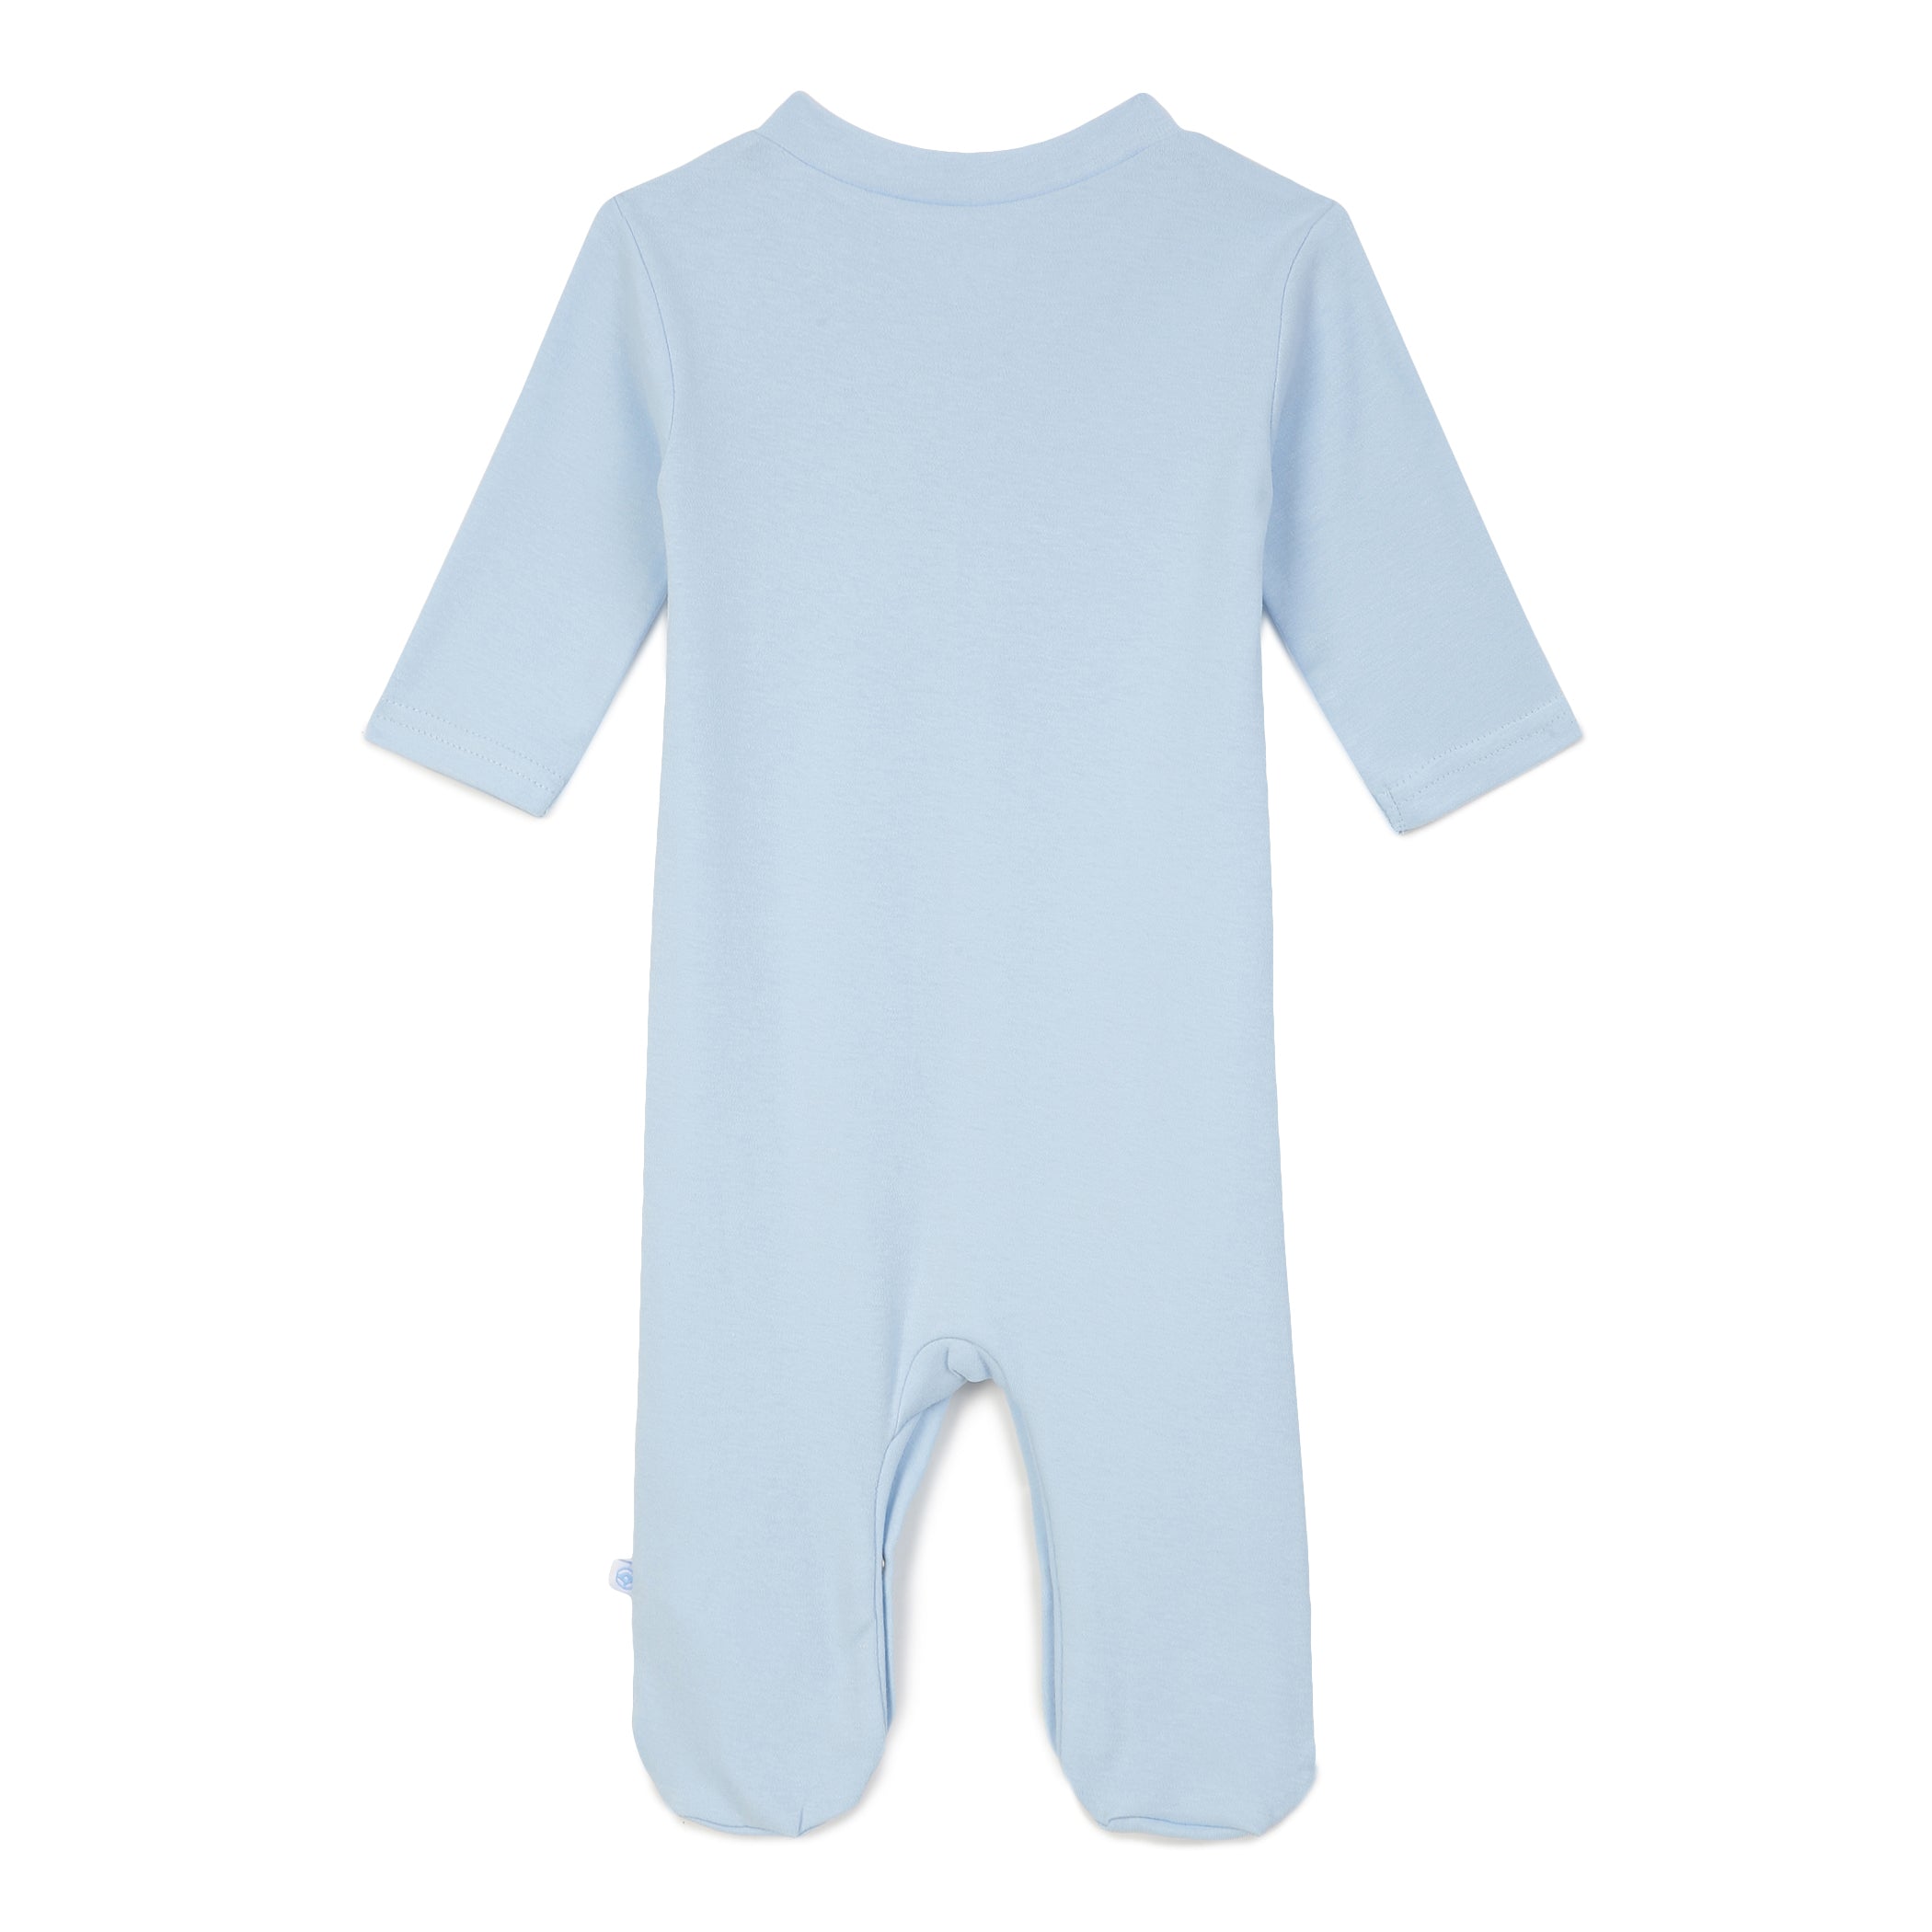 Babies Solid Full Sleeve Sleepsuit